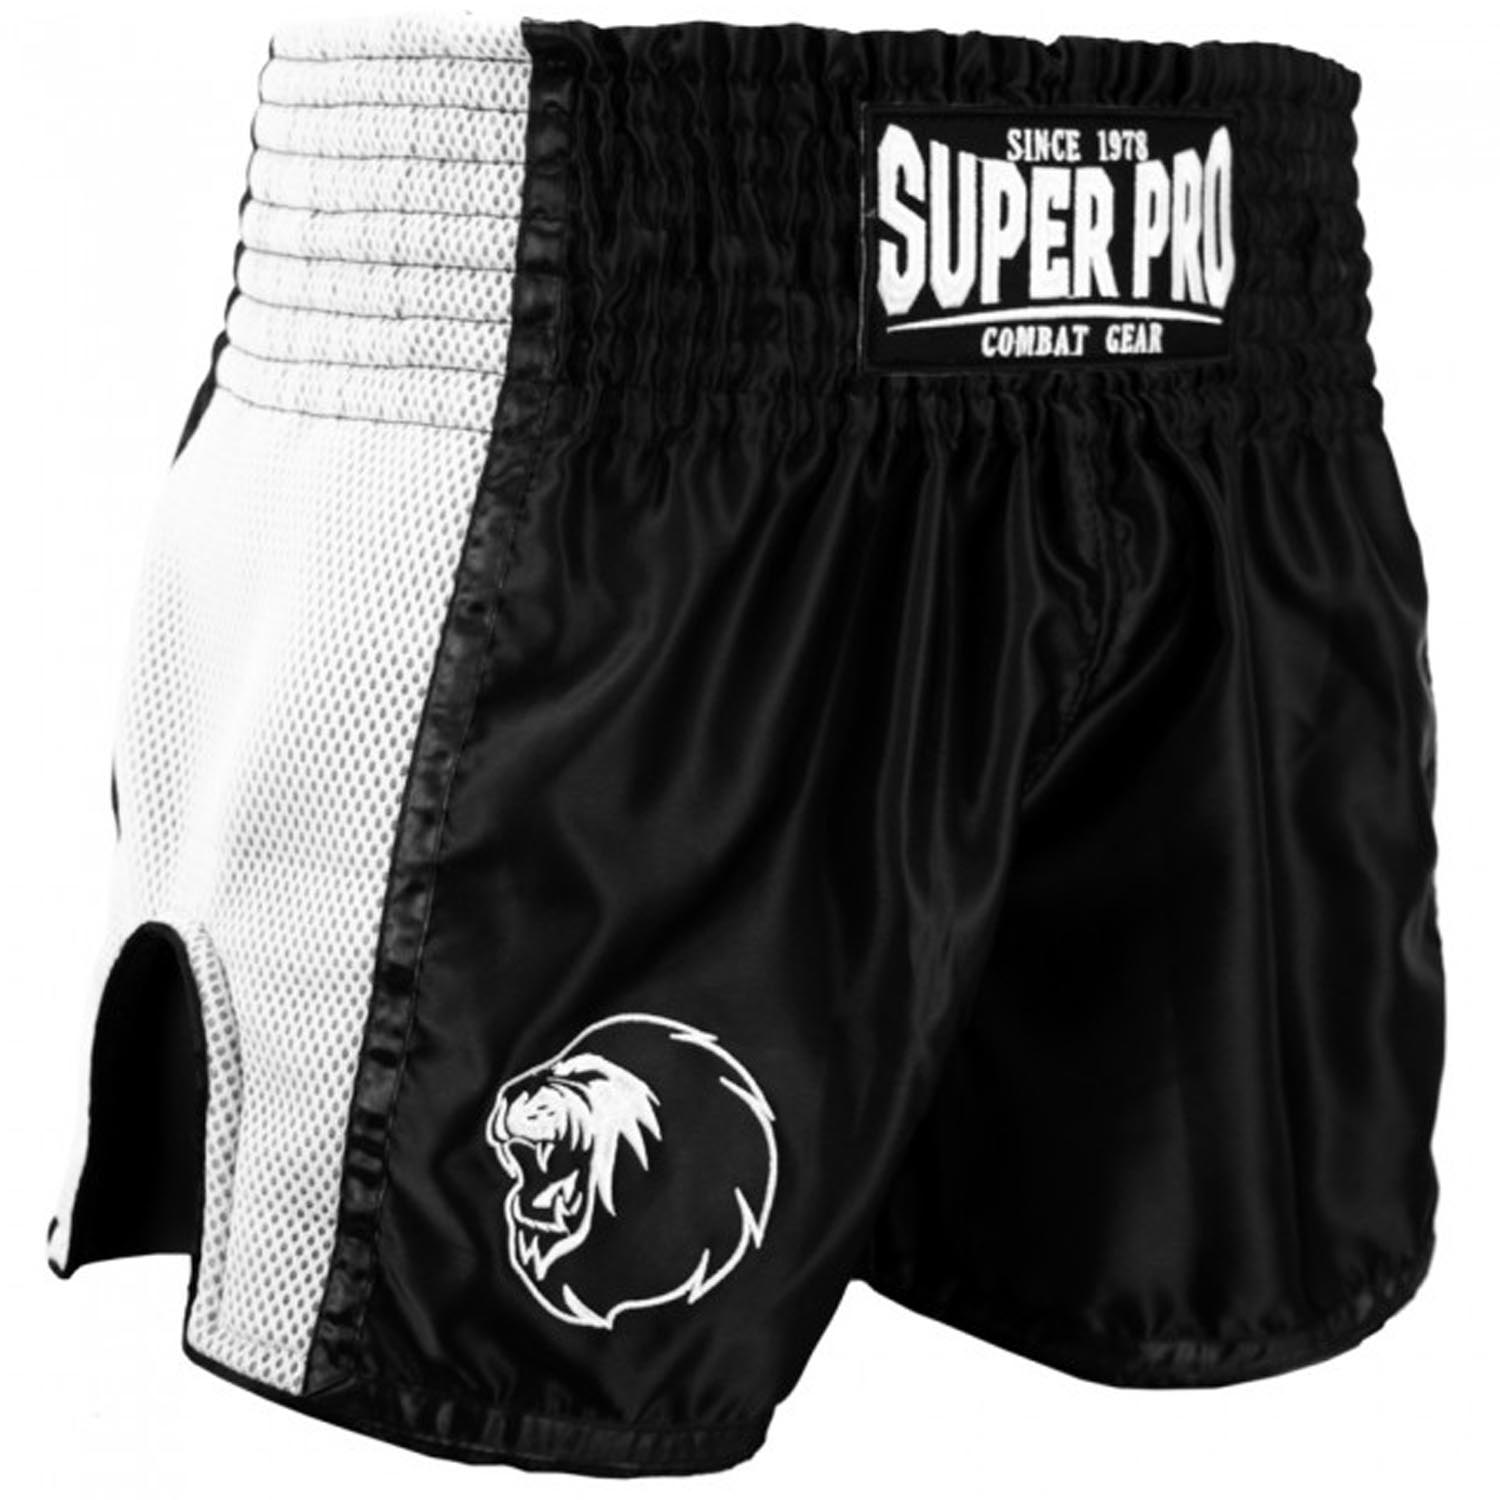 Super Pro Muay Thai Shorts, Brave, schwarz-weiß, XXL